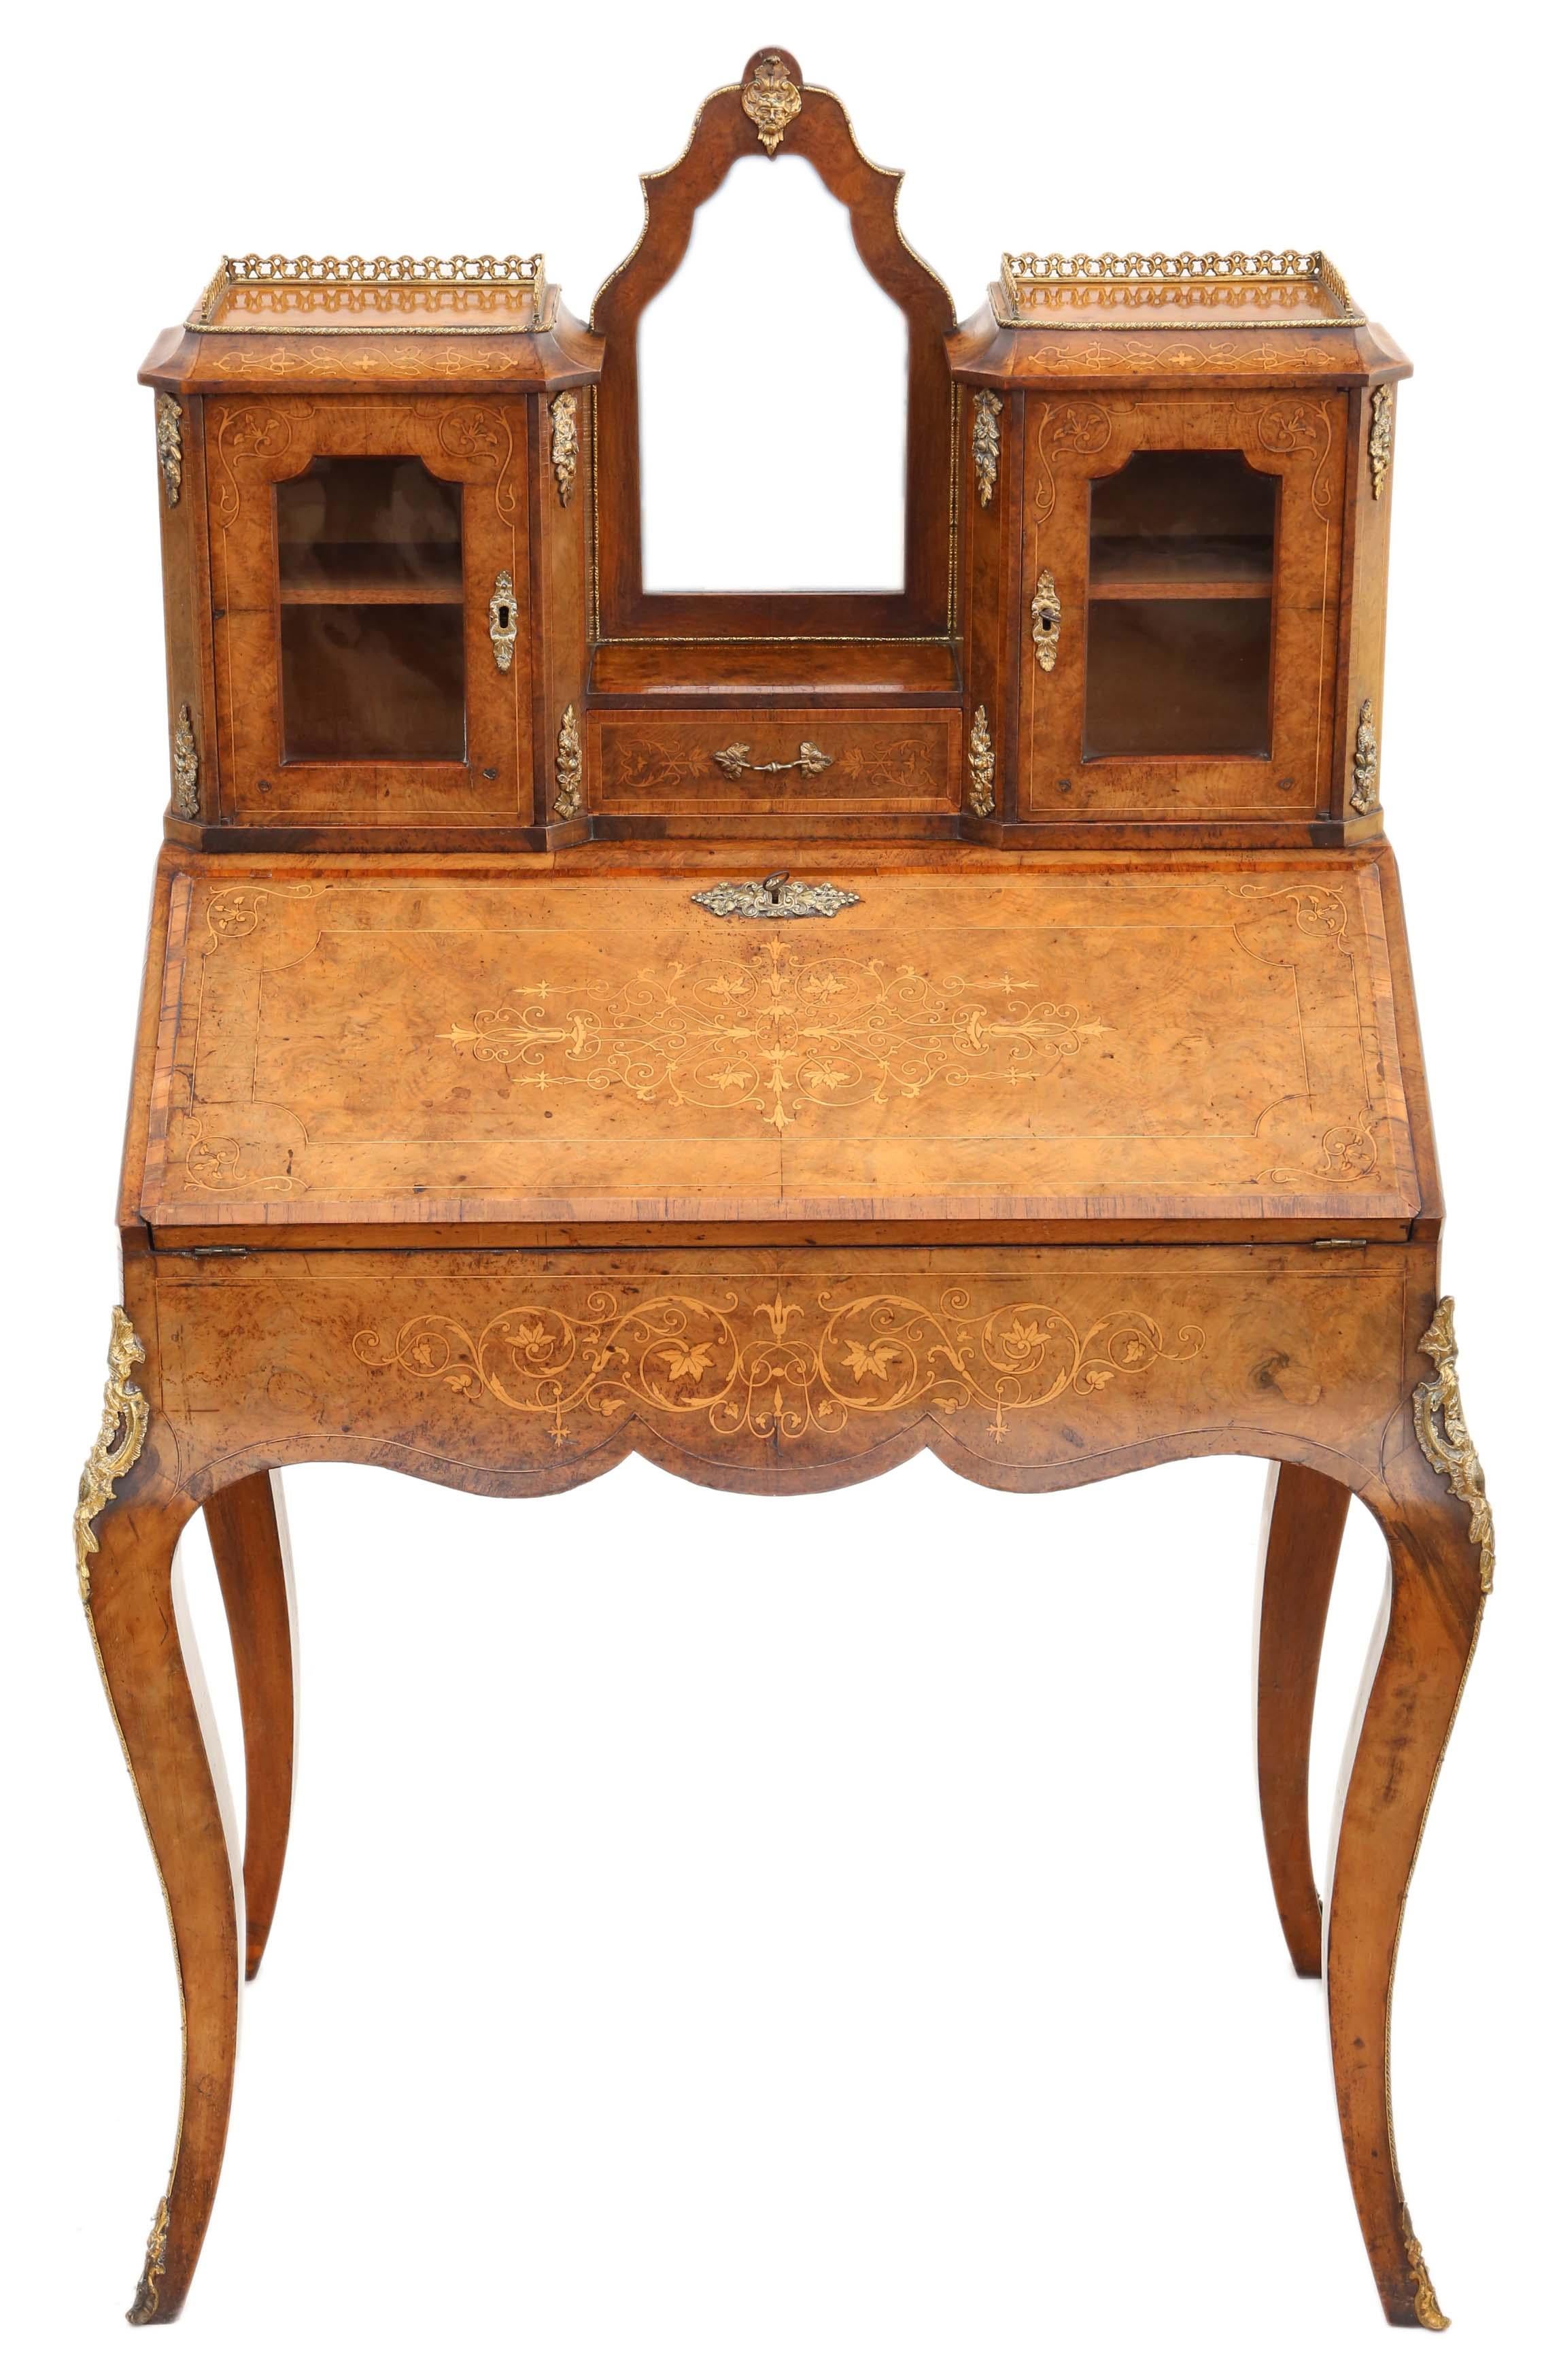 Antique Fine Quality Inlaid Burr Walnut Bonheur De Jour Desk Writing Table For Sale 7